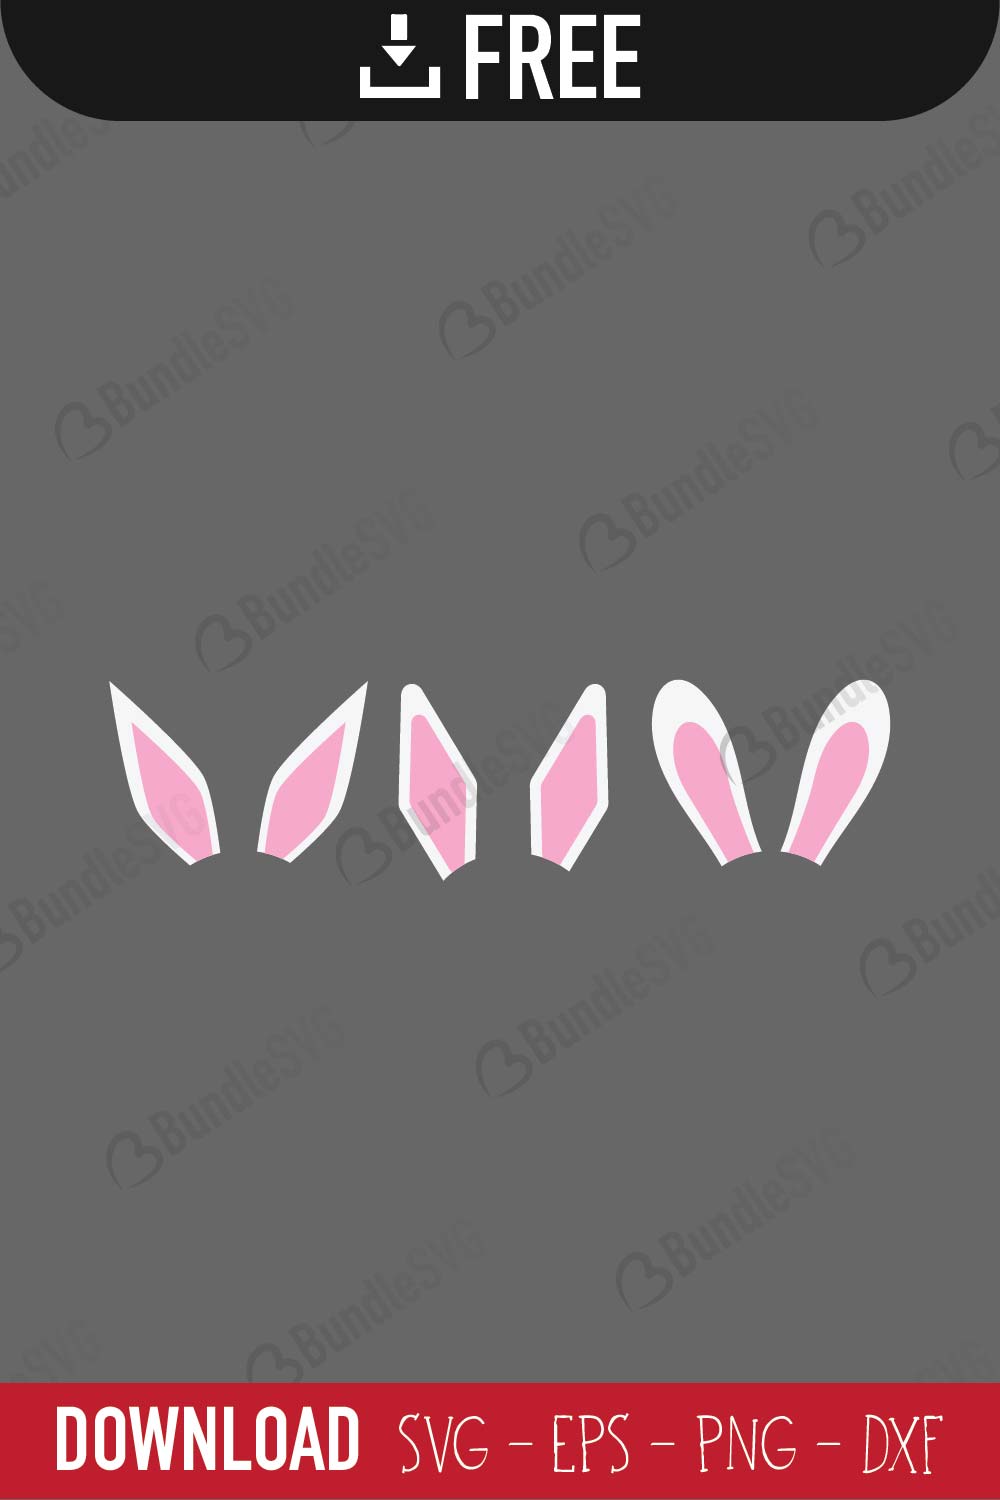 Download Easter Bunny Ears Svg Free Download Bundlesvg